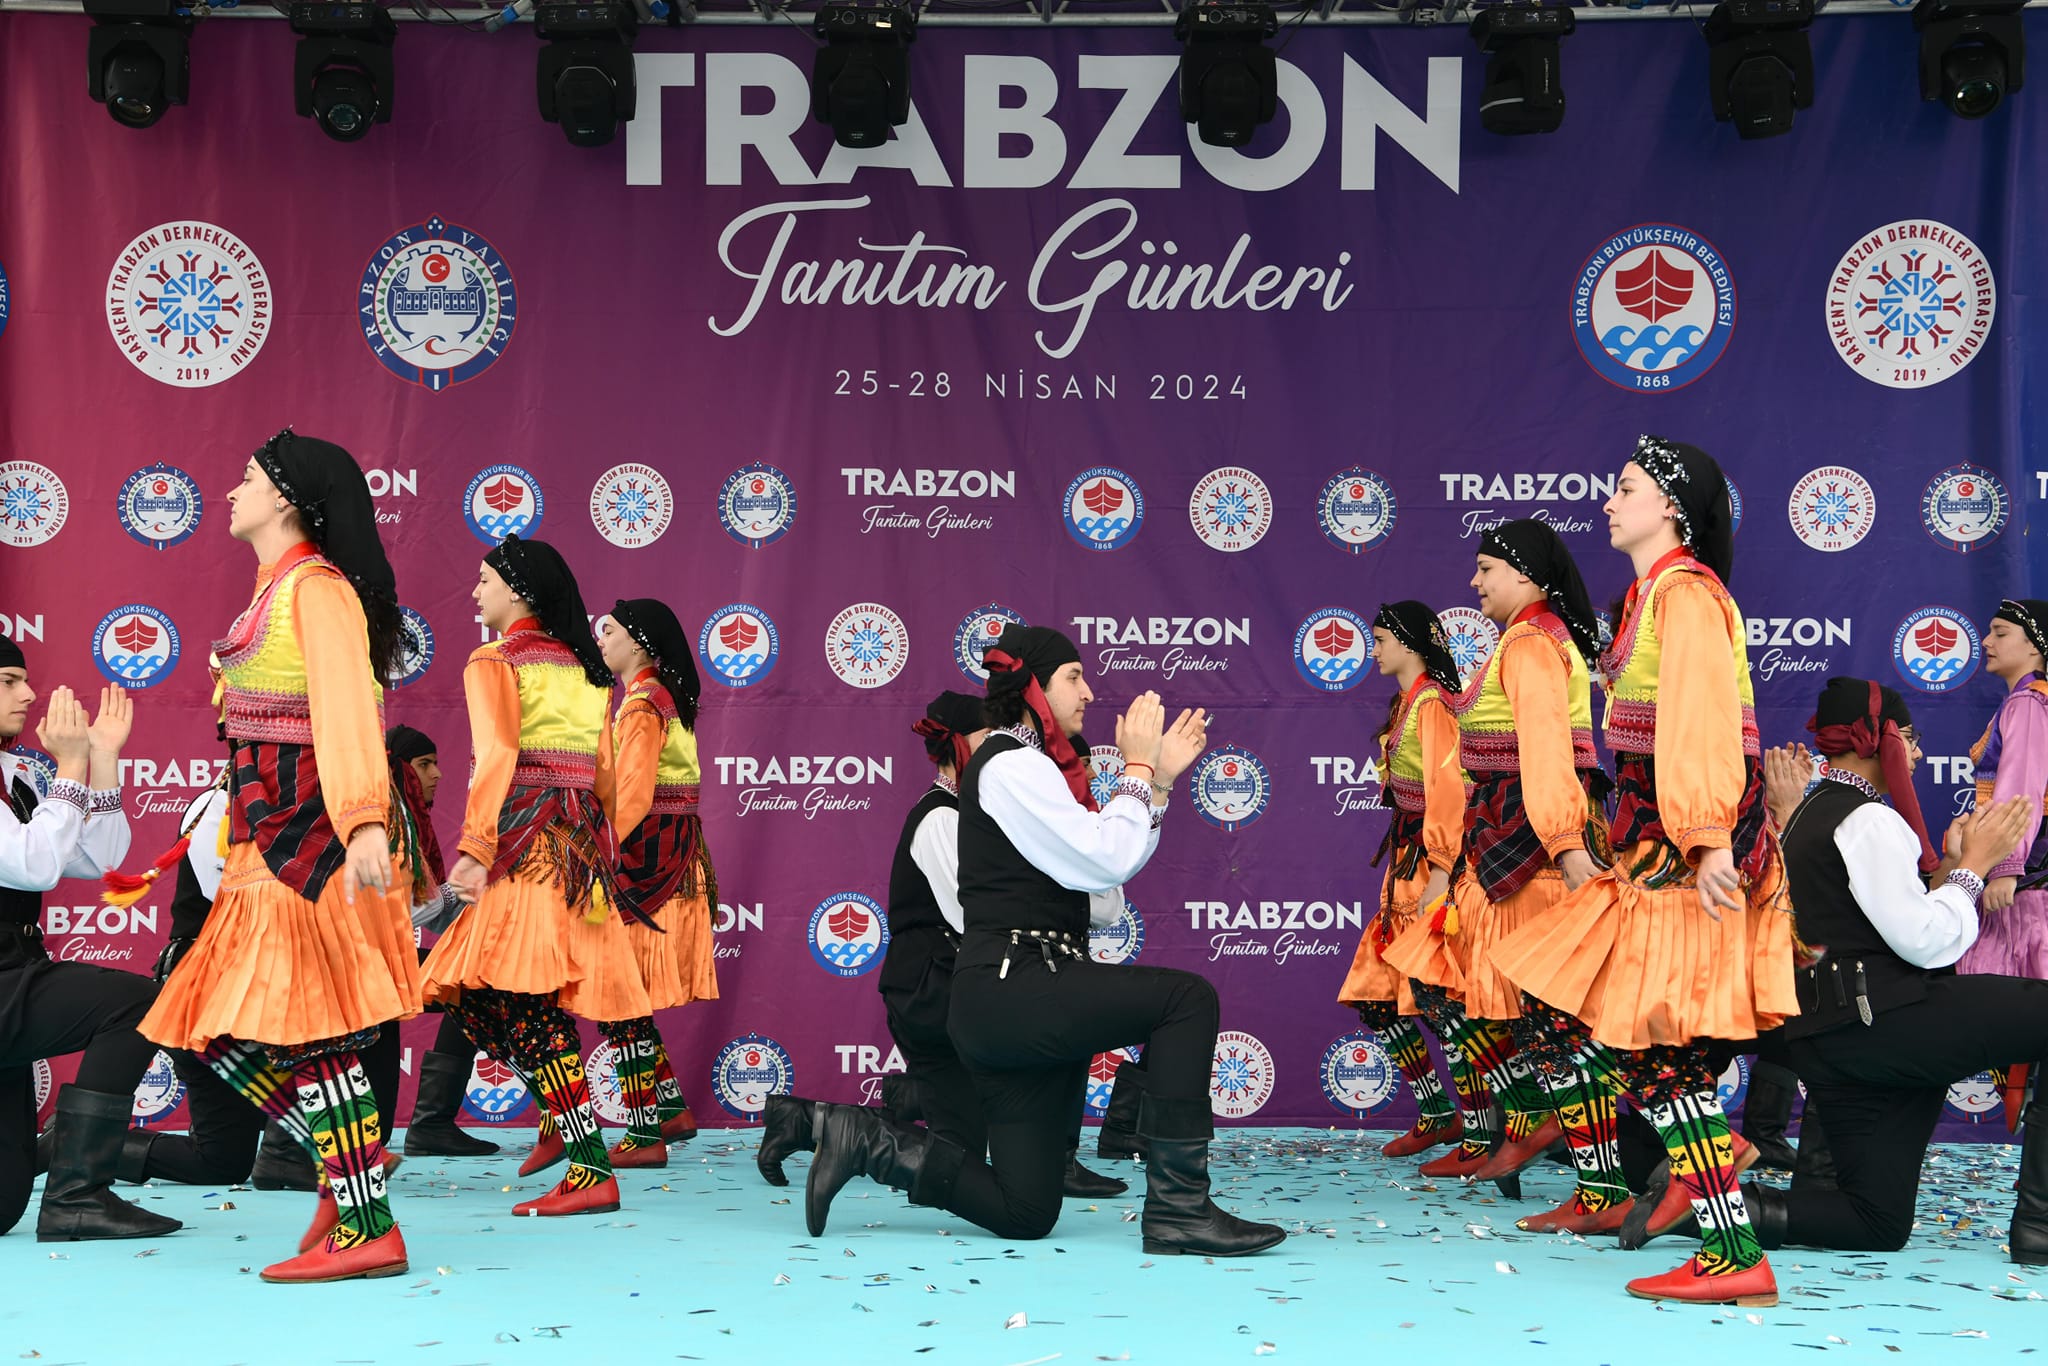 Trabzon Tanitim Gunleri 1